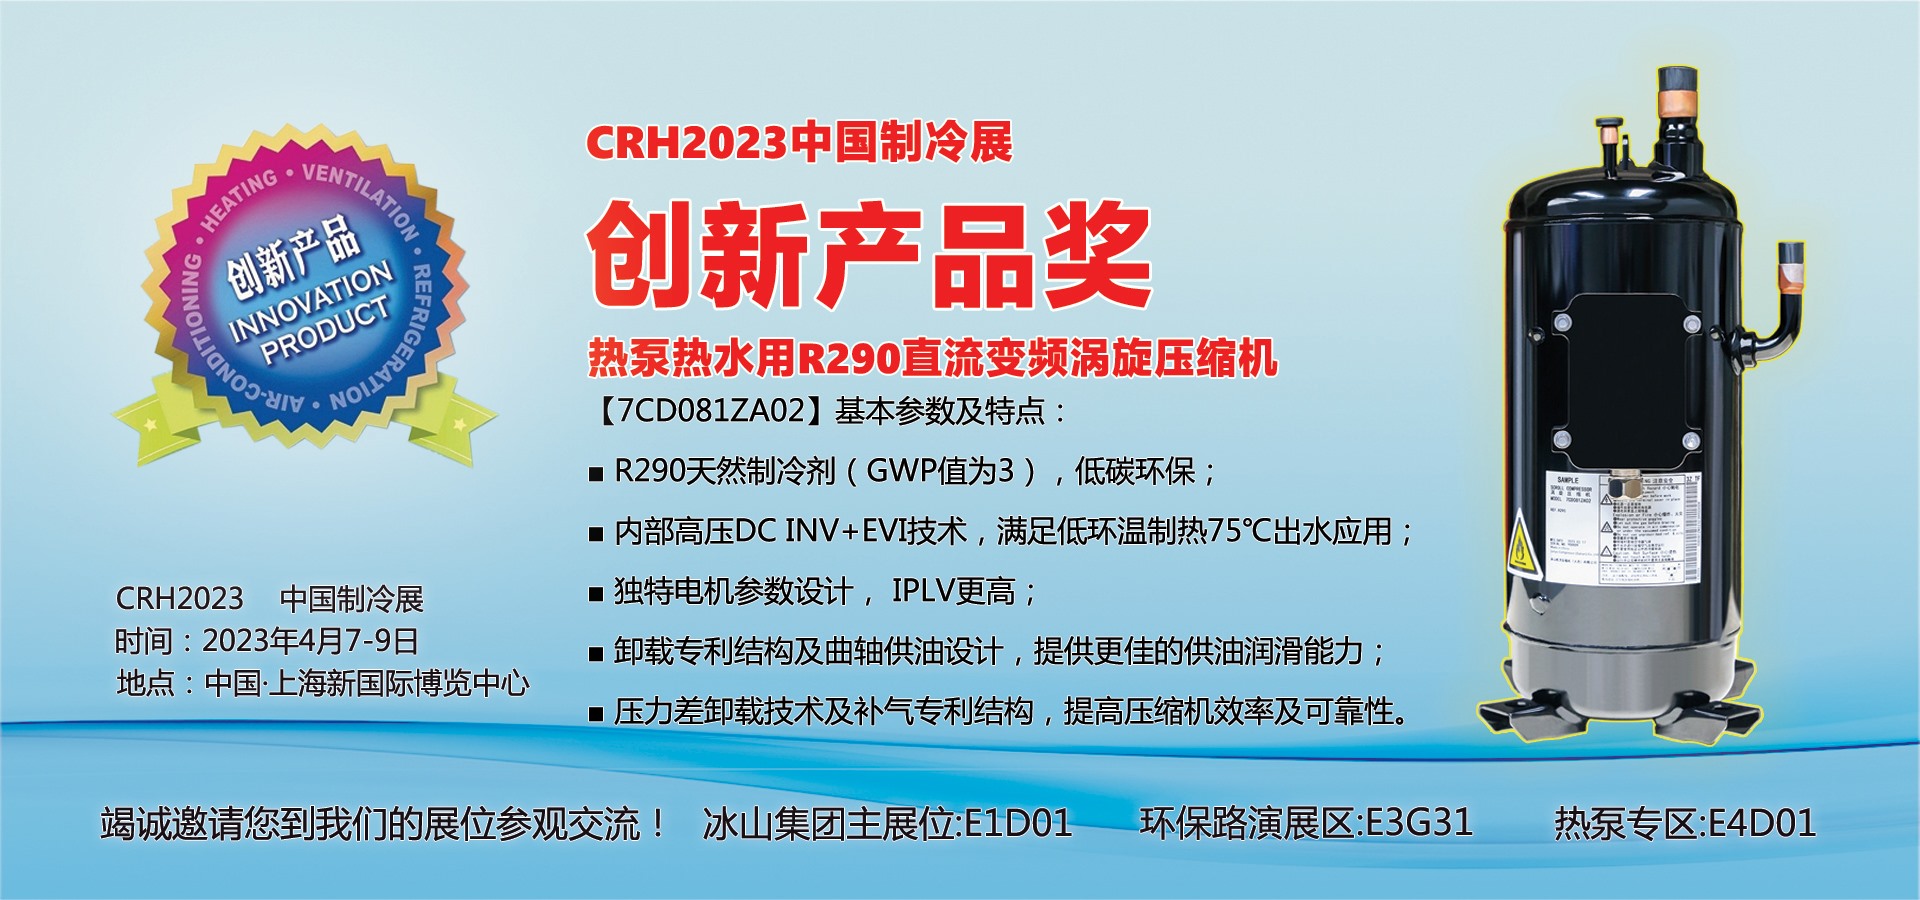 CRH2023中国制冷展创新产品奖